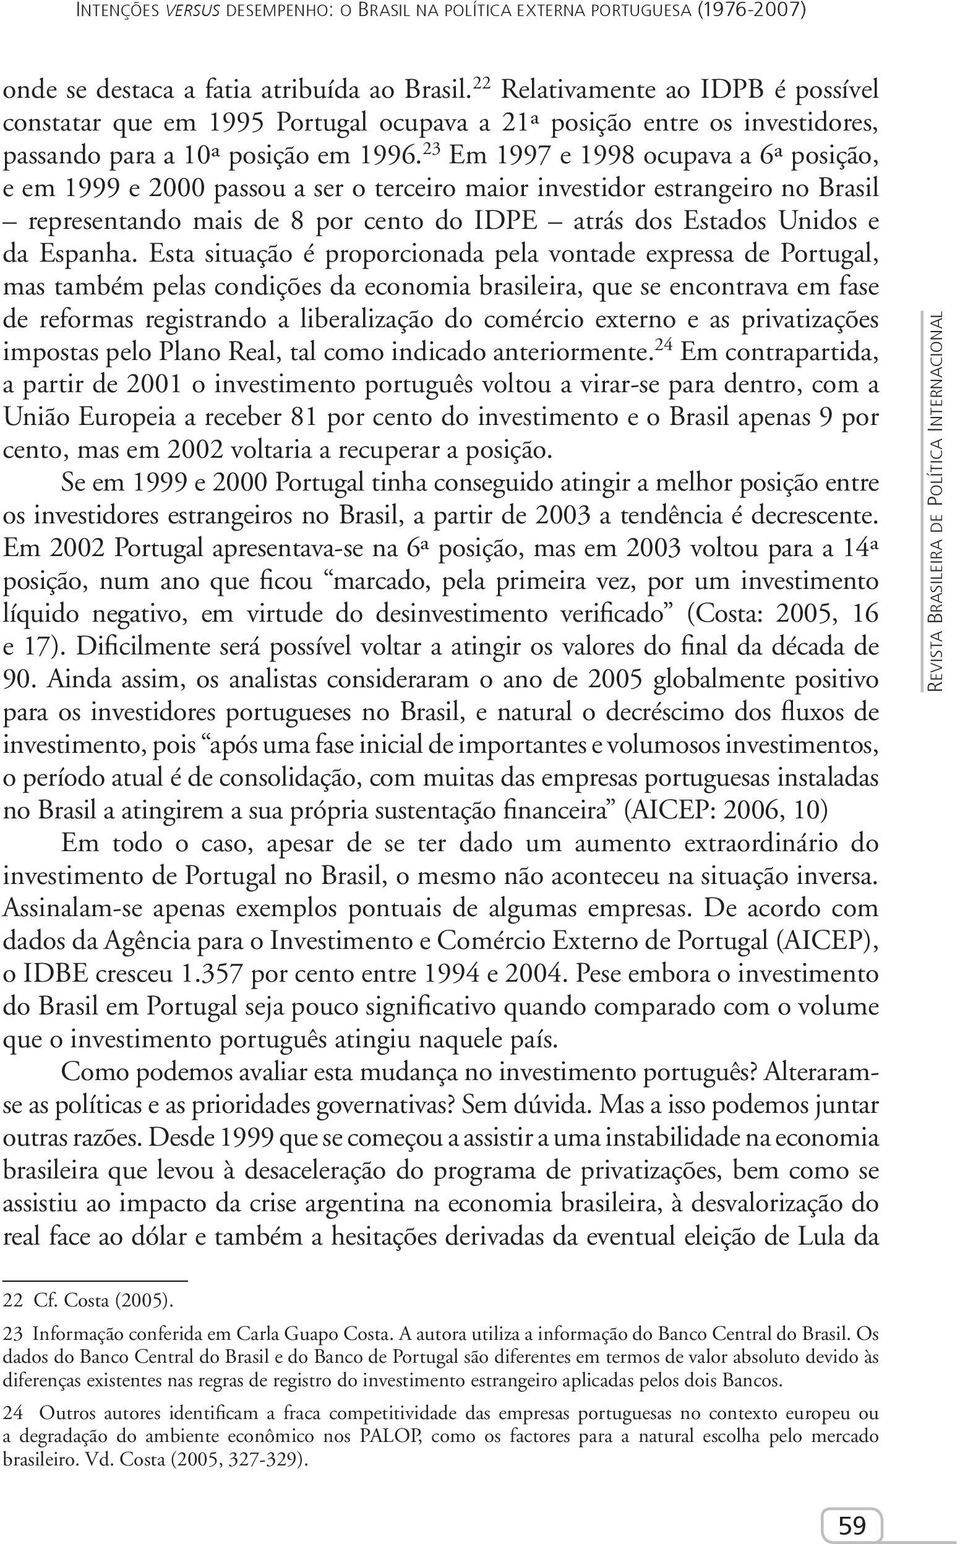 23 Em 1997 e 1998 ocupava a 6ª posição, e em 1999 e 2000 passou a ser o terceiro maior investidor estrangeiro no Brasil representando mais de 8 por cento do IDPE atrás dos Estados Unidos e da Espanha.